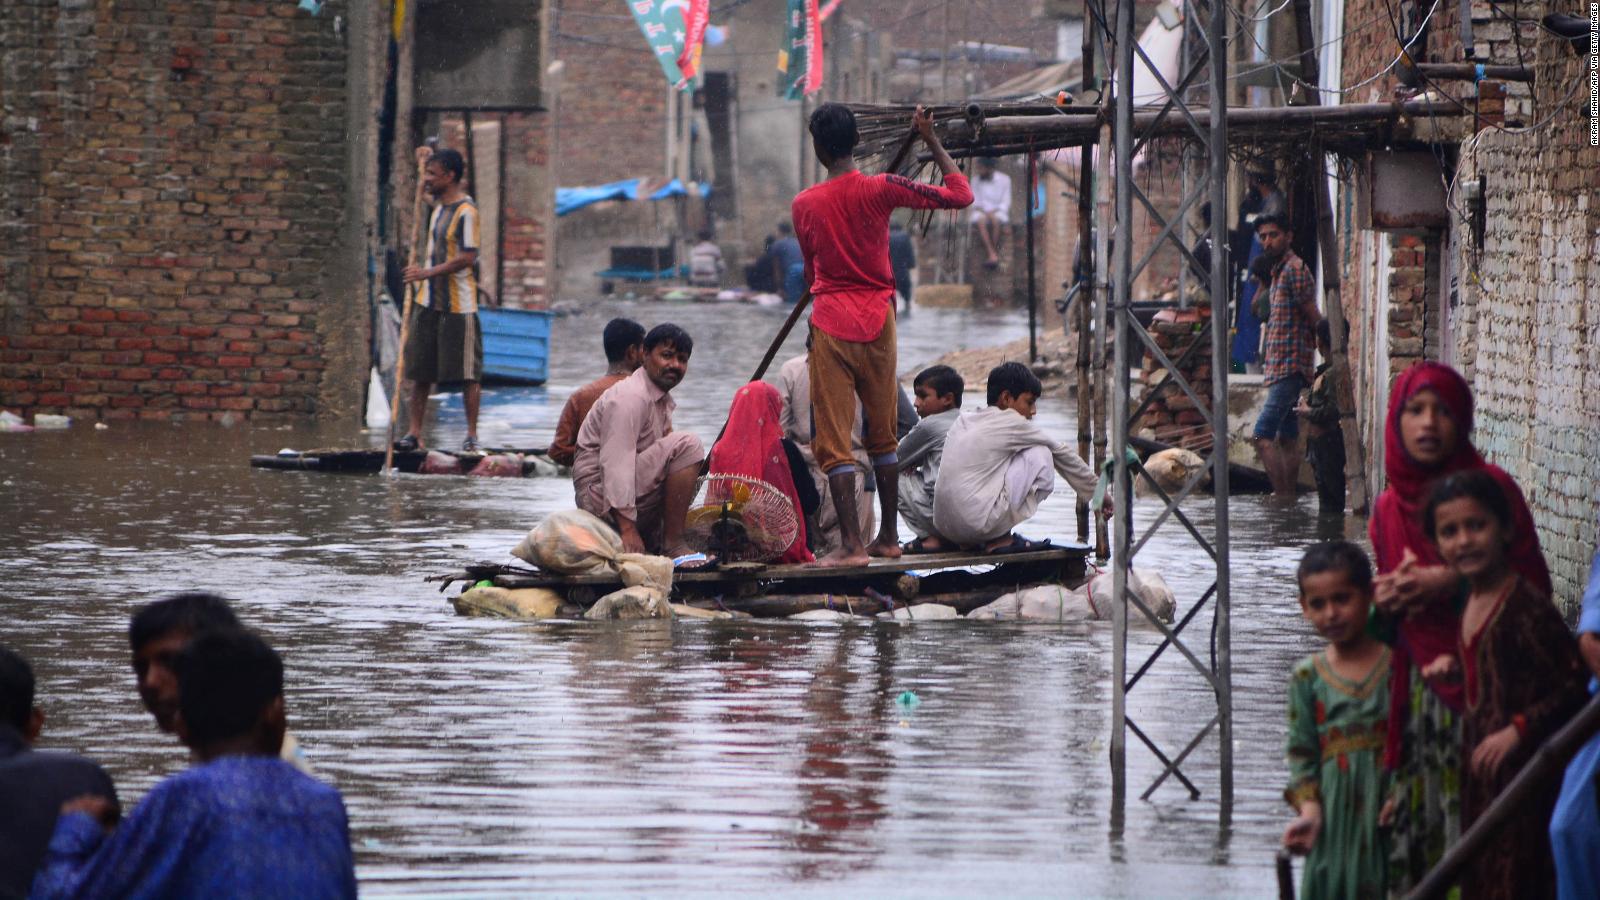 Mbi 900 të vrarë nga shirat dhe përmbytjet në Pakistan, mes tyre 326 fëmijë